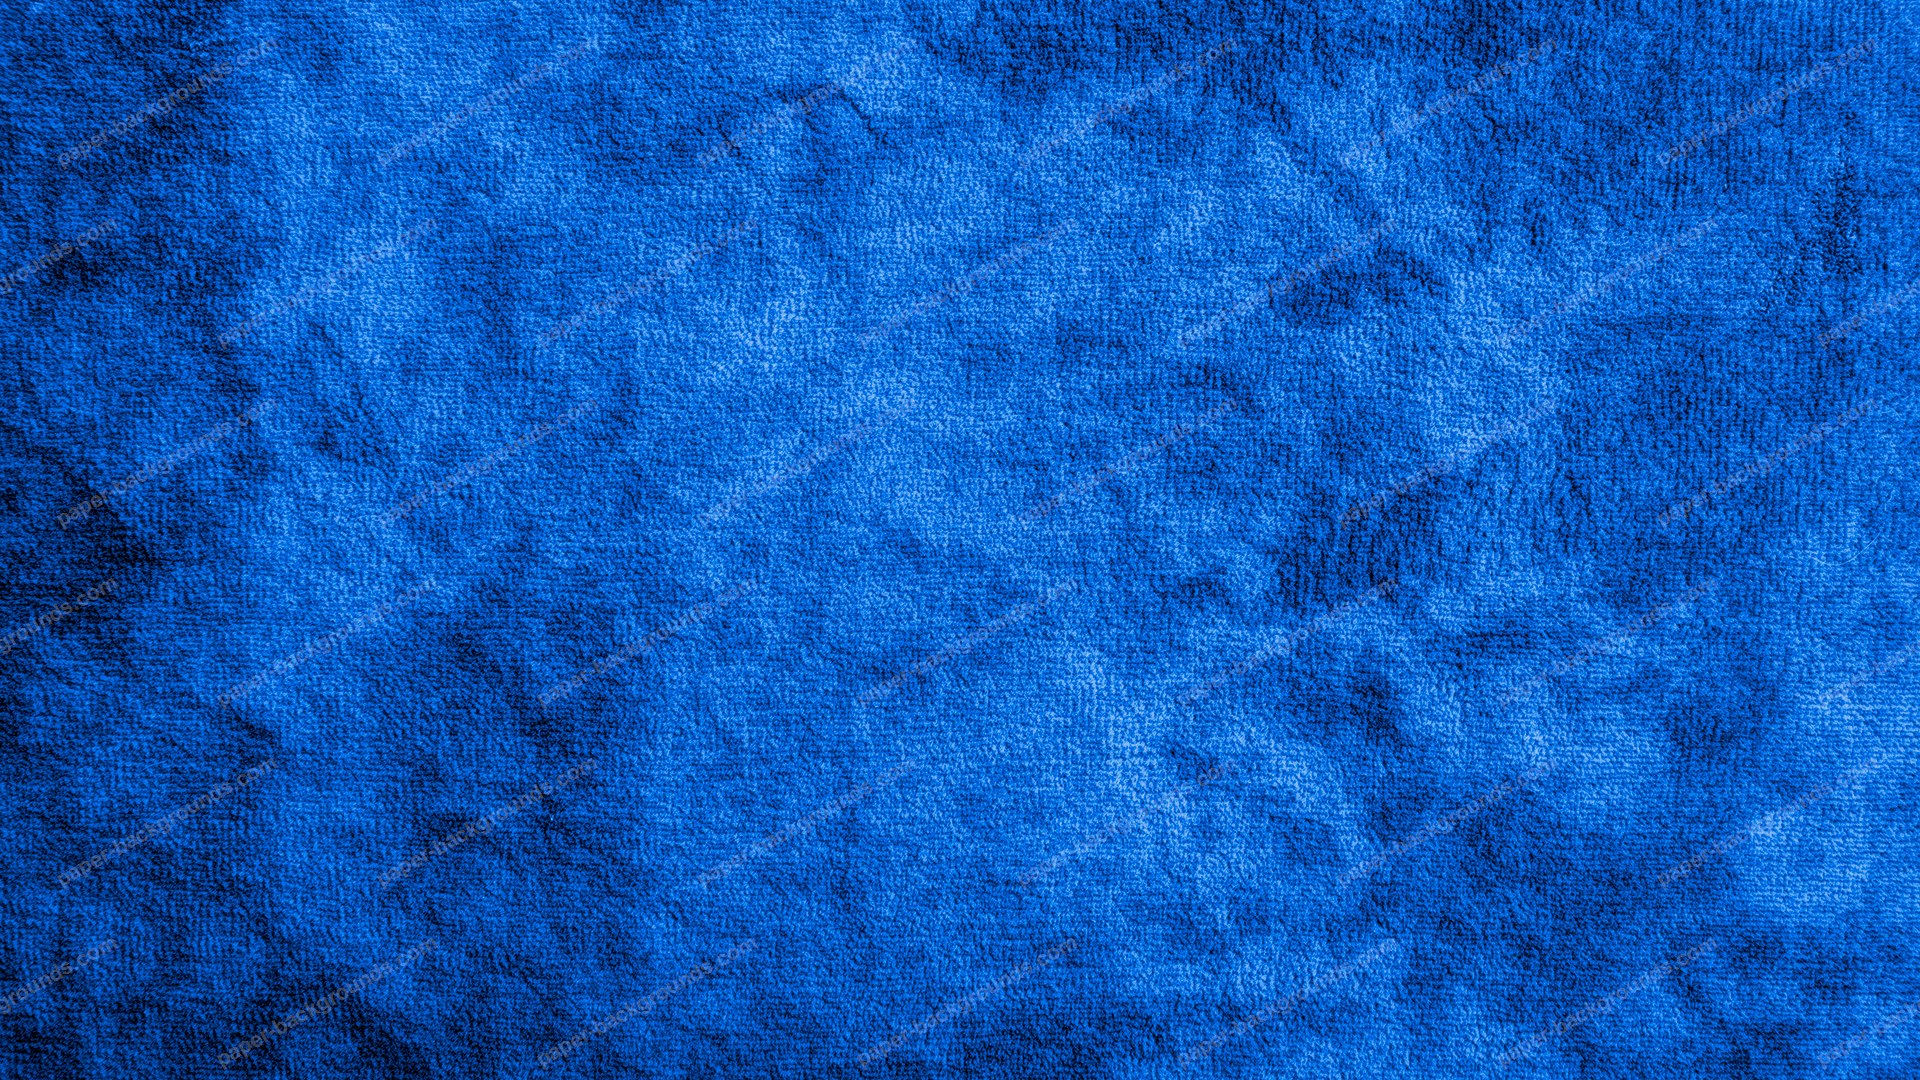 fondo de pantalla con textura azul,azul cobalto,azul,azul eléctrico,turquesa,agua